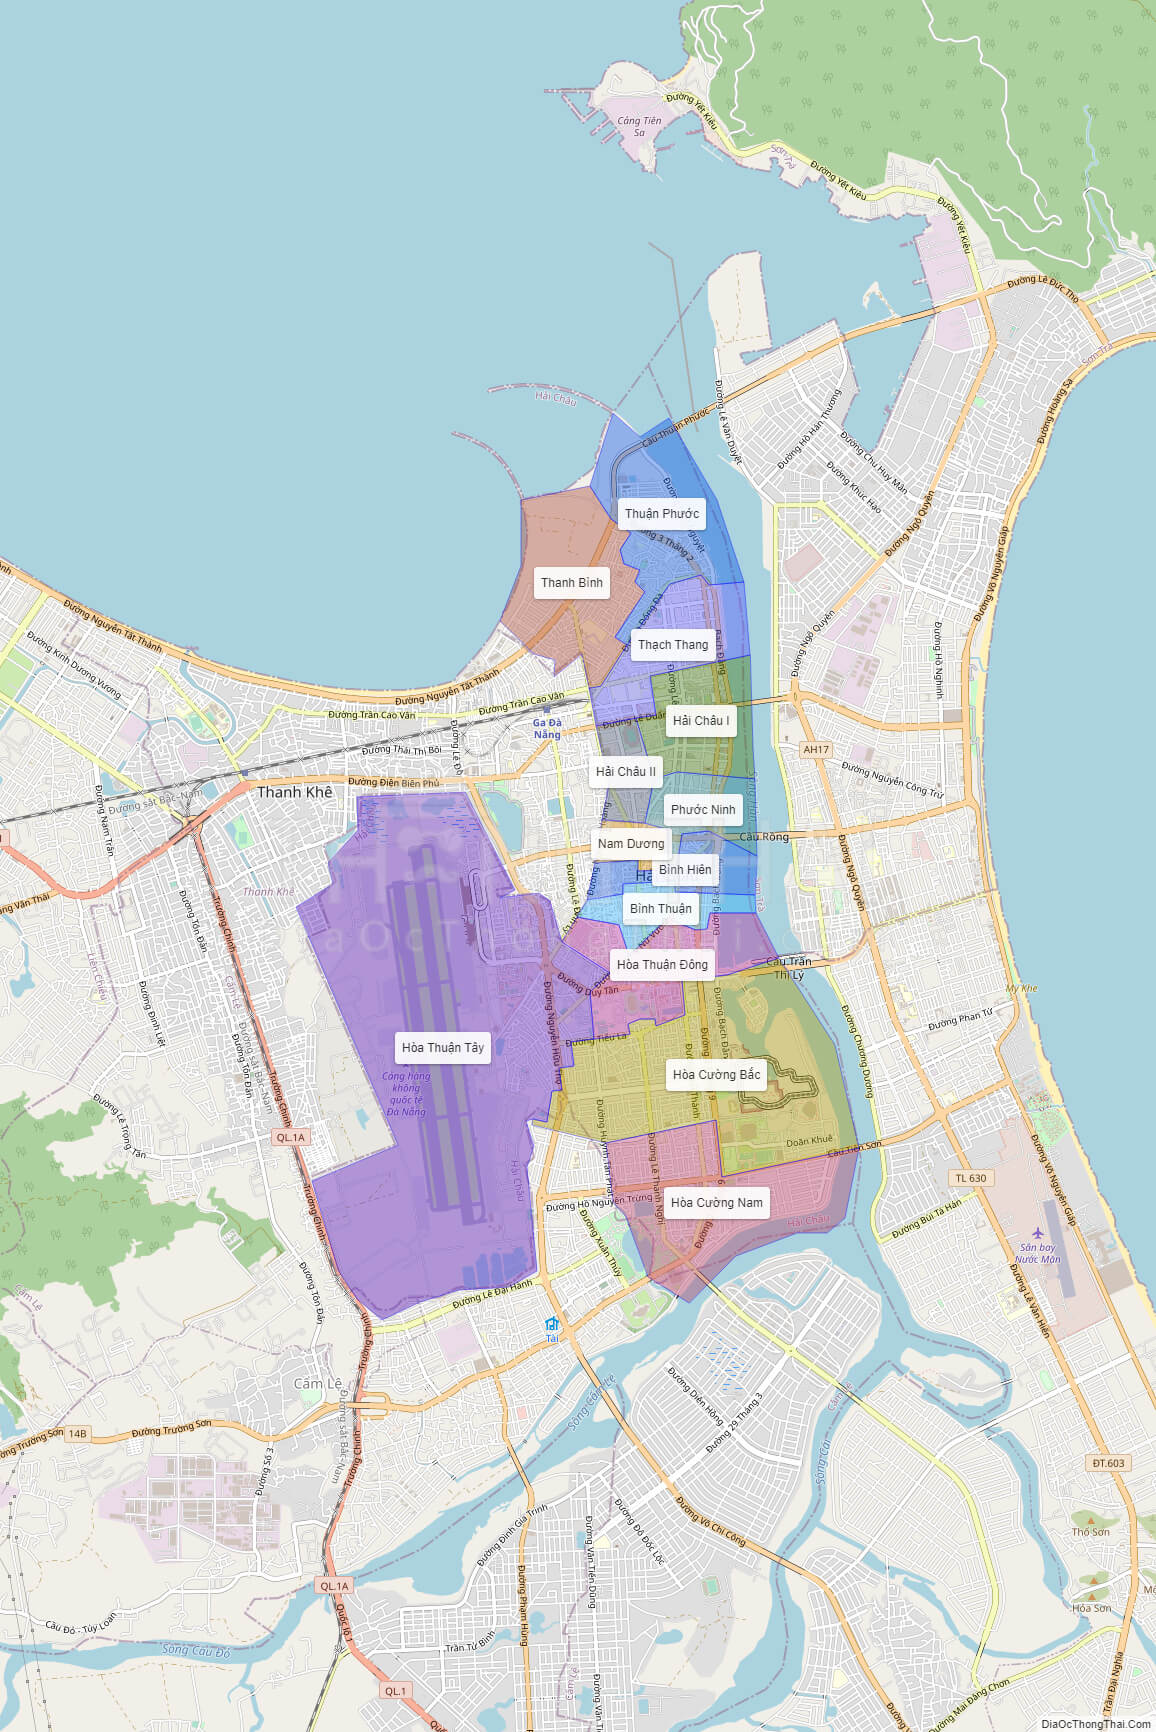 Quận Hải Châu là trung tâm hành chính của Đà Nẵng, với nhiều cơ sở hạ tầng và tiện ích đang phát triển. Bản đồ Quận Hải Châu năm 2024 của Địa Ốc Thông Thái sẽ giúp bạn hiểu rõ hơn về toàn cảnh của khu vực này. Hãy xem qua bản đồ để có những thông tin hữu ích cho kế hoạch tương lai.